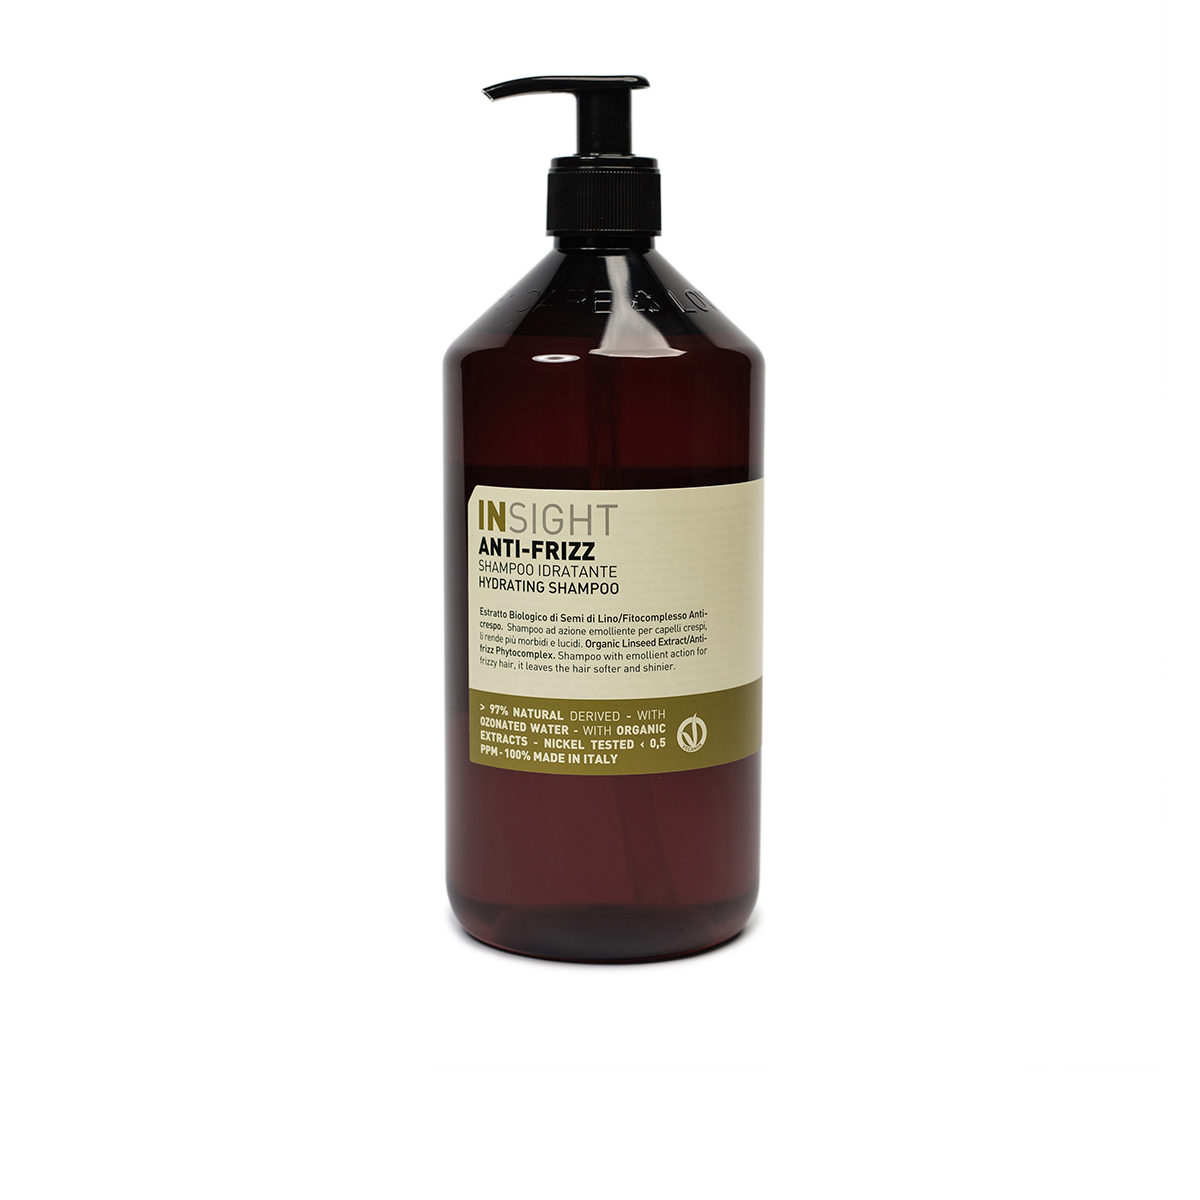 szampon anti-frizz, naturalny szampon, do włosów kręconych, suchych, trudnych, szampon insight, wyciąg z siemienia lnianego, fitokompleks